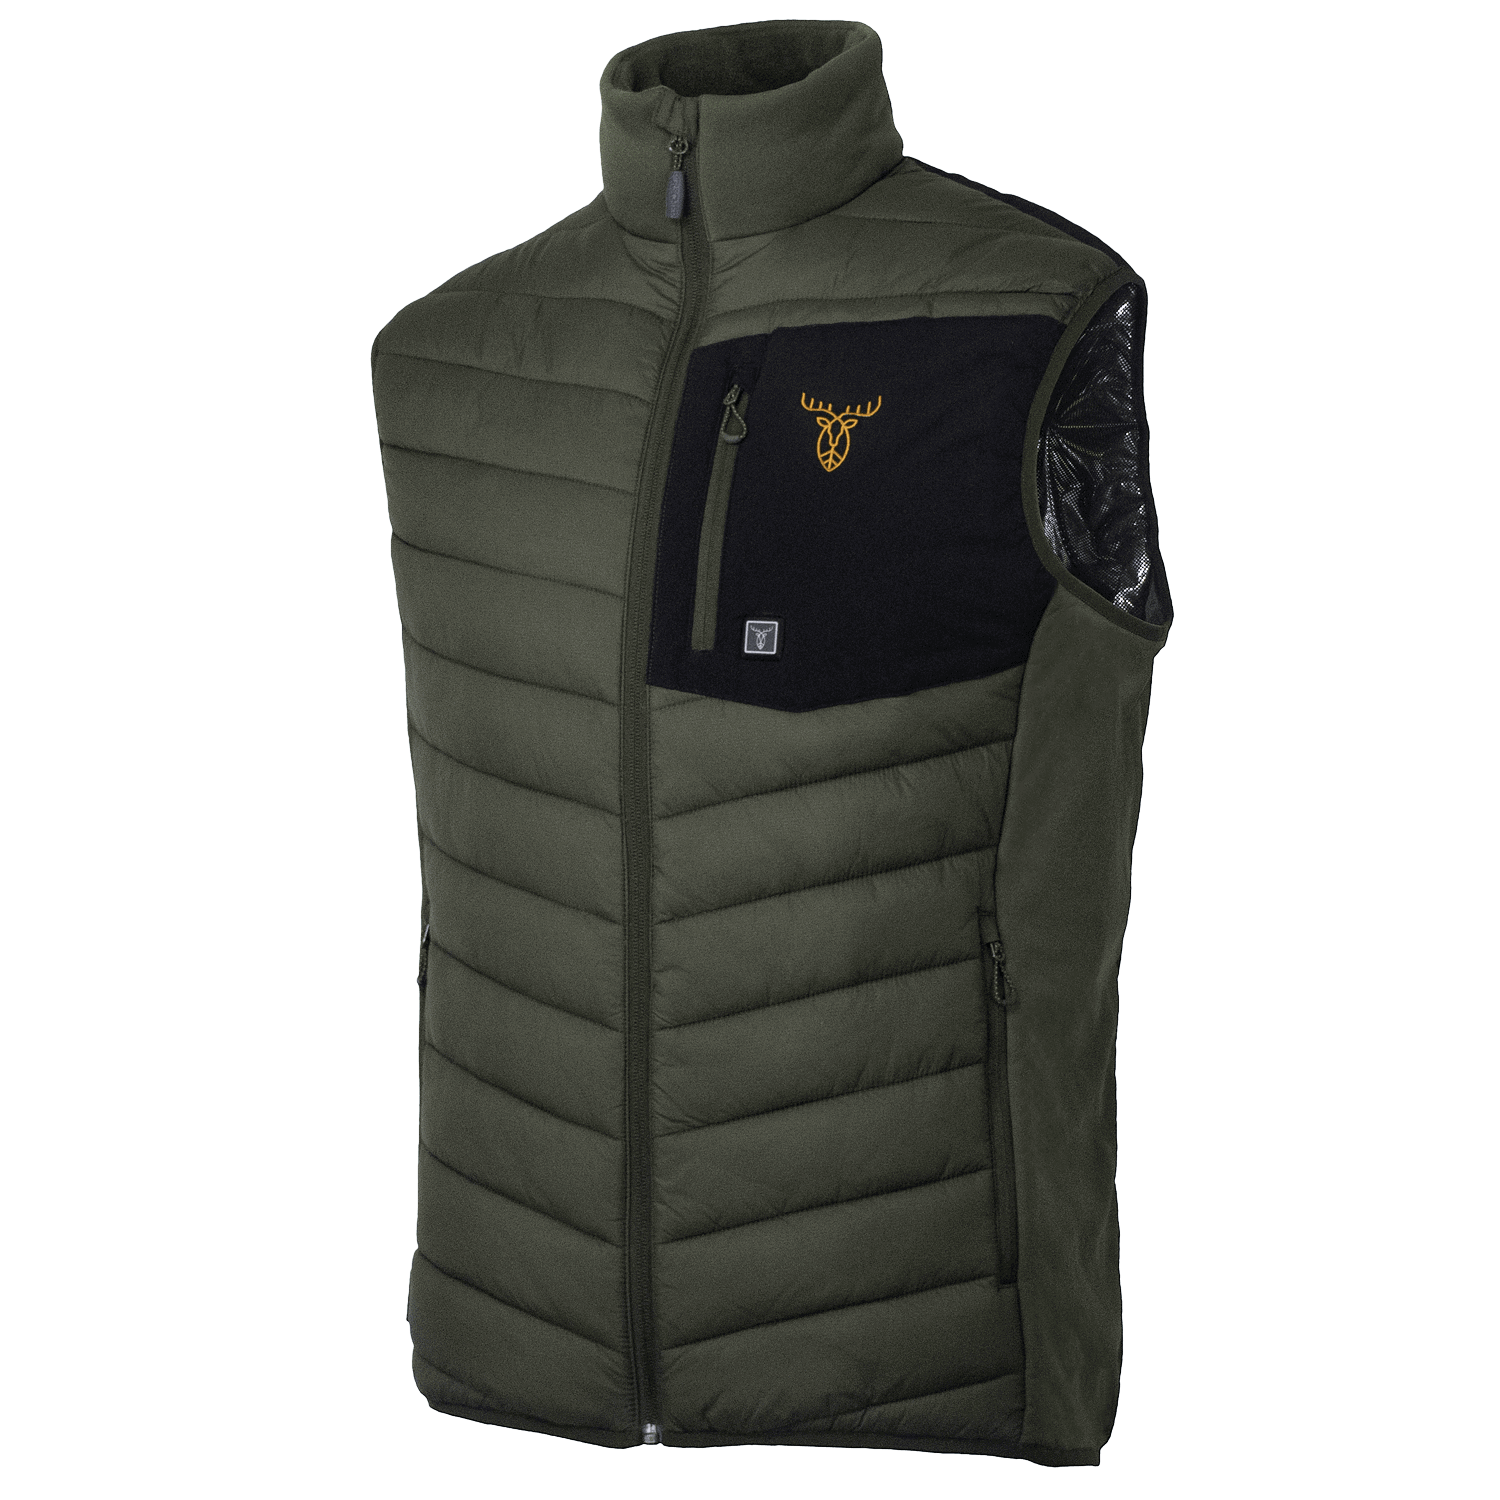 Pirscher Gear Heated Vest - Winter Hunting Clothing